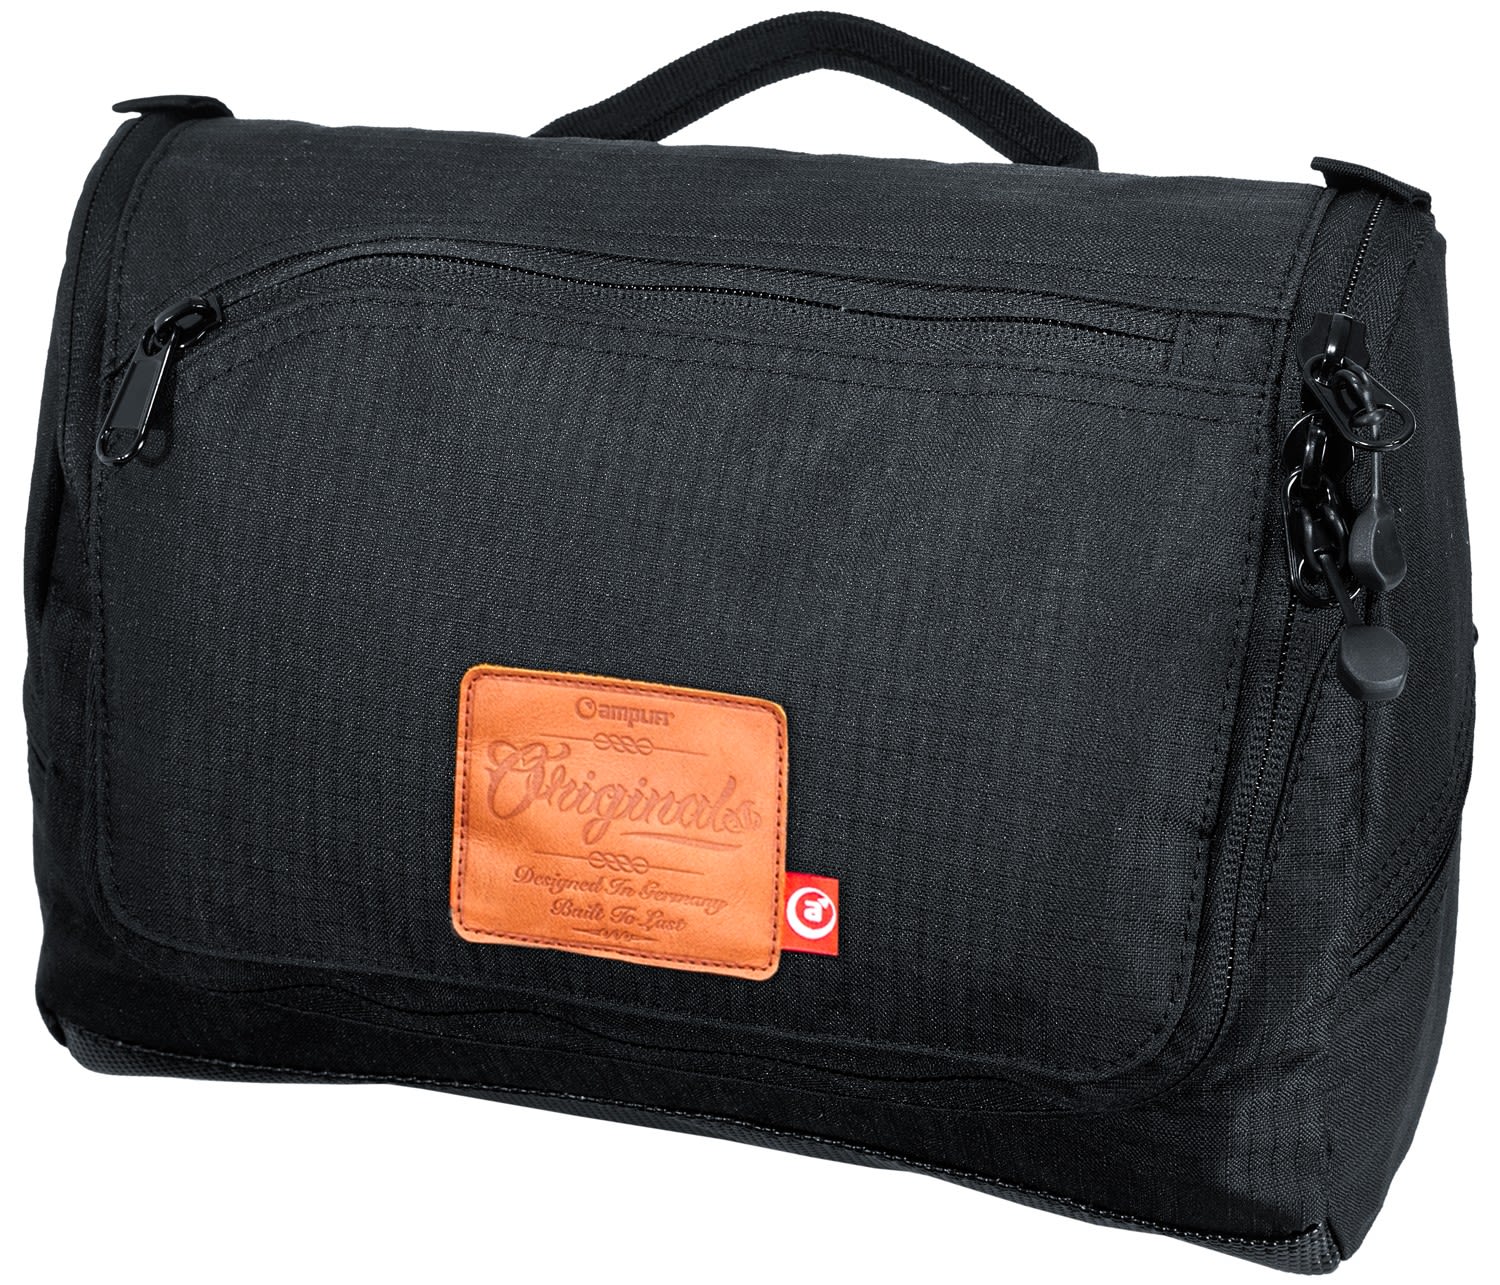 Amplifi Wash Pack Schwarz- Kulturtaschen- Grsse One Size - Farbe Black unter Amplifi